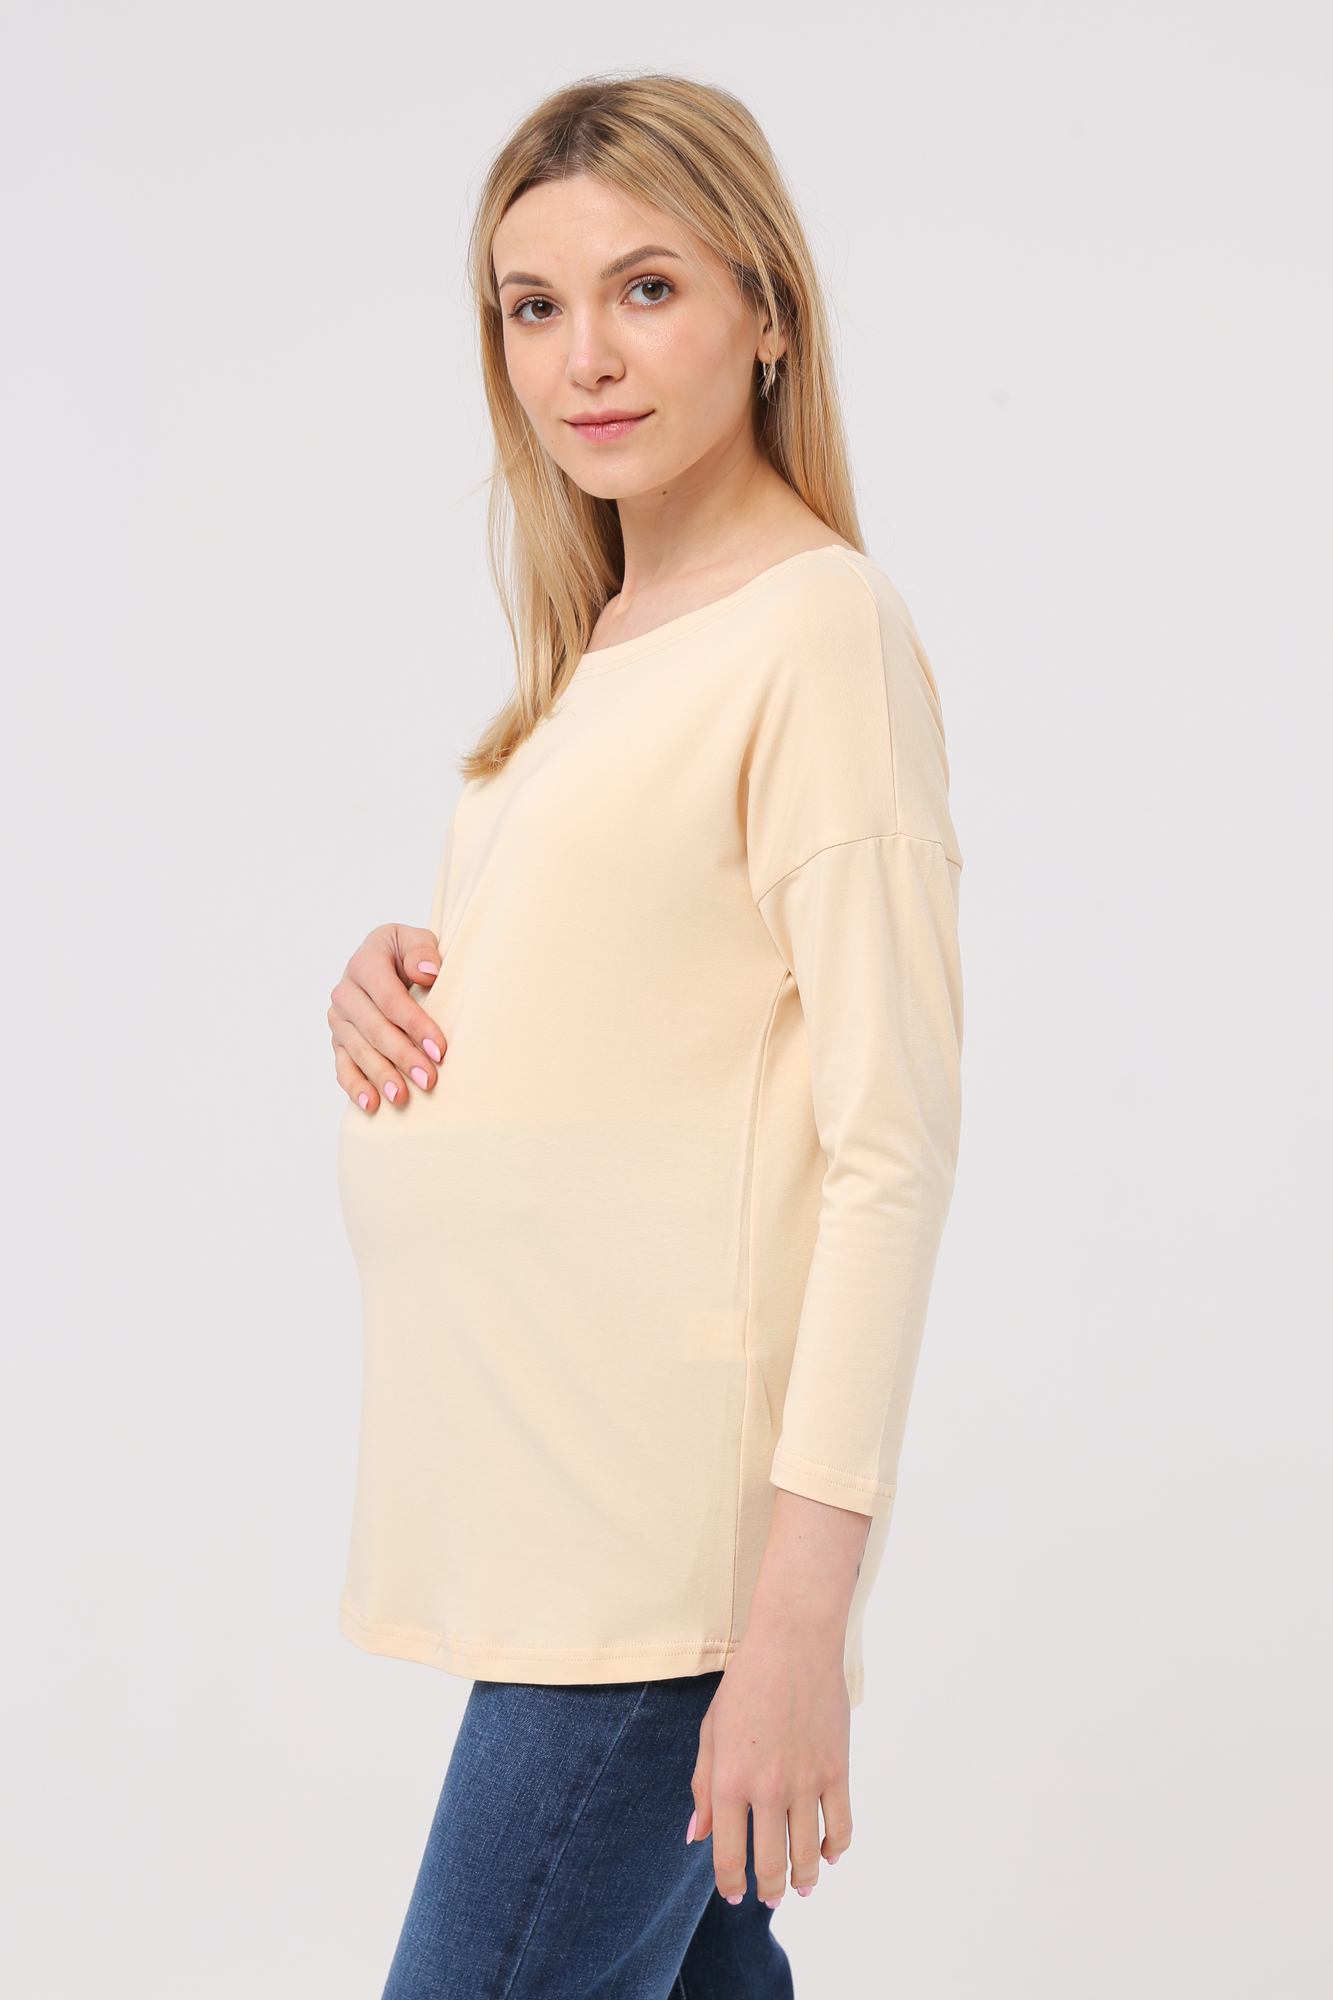 Лонгслив для беременных женский Mama's fantasy 1709MF желтый 48 RU